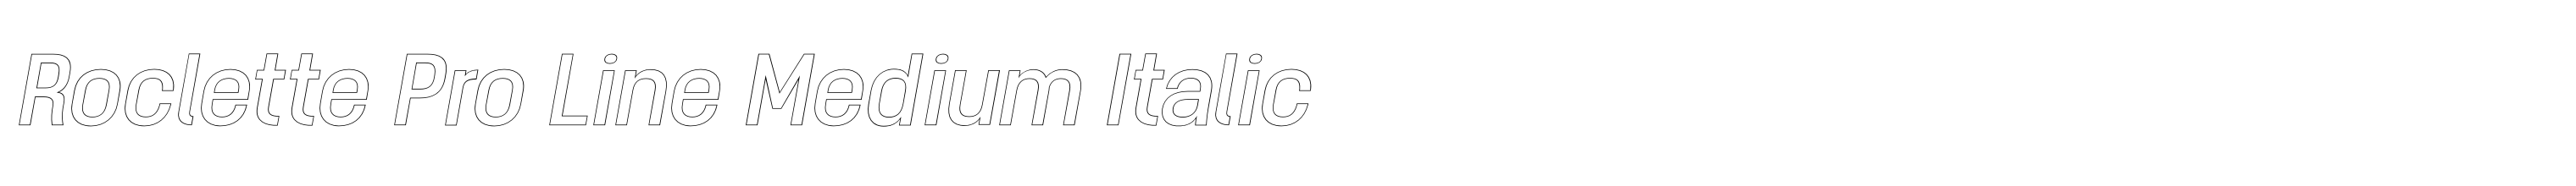 Roclette Pro Line Medium Italic